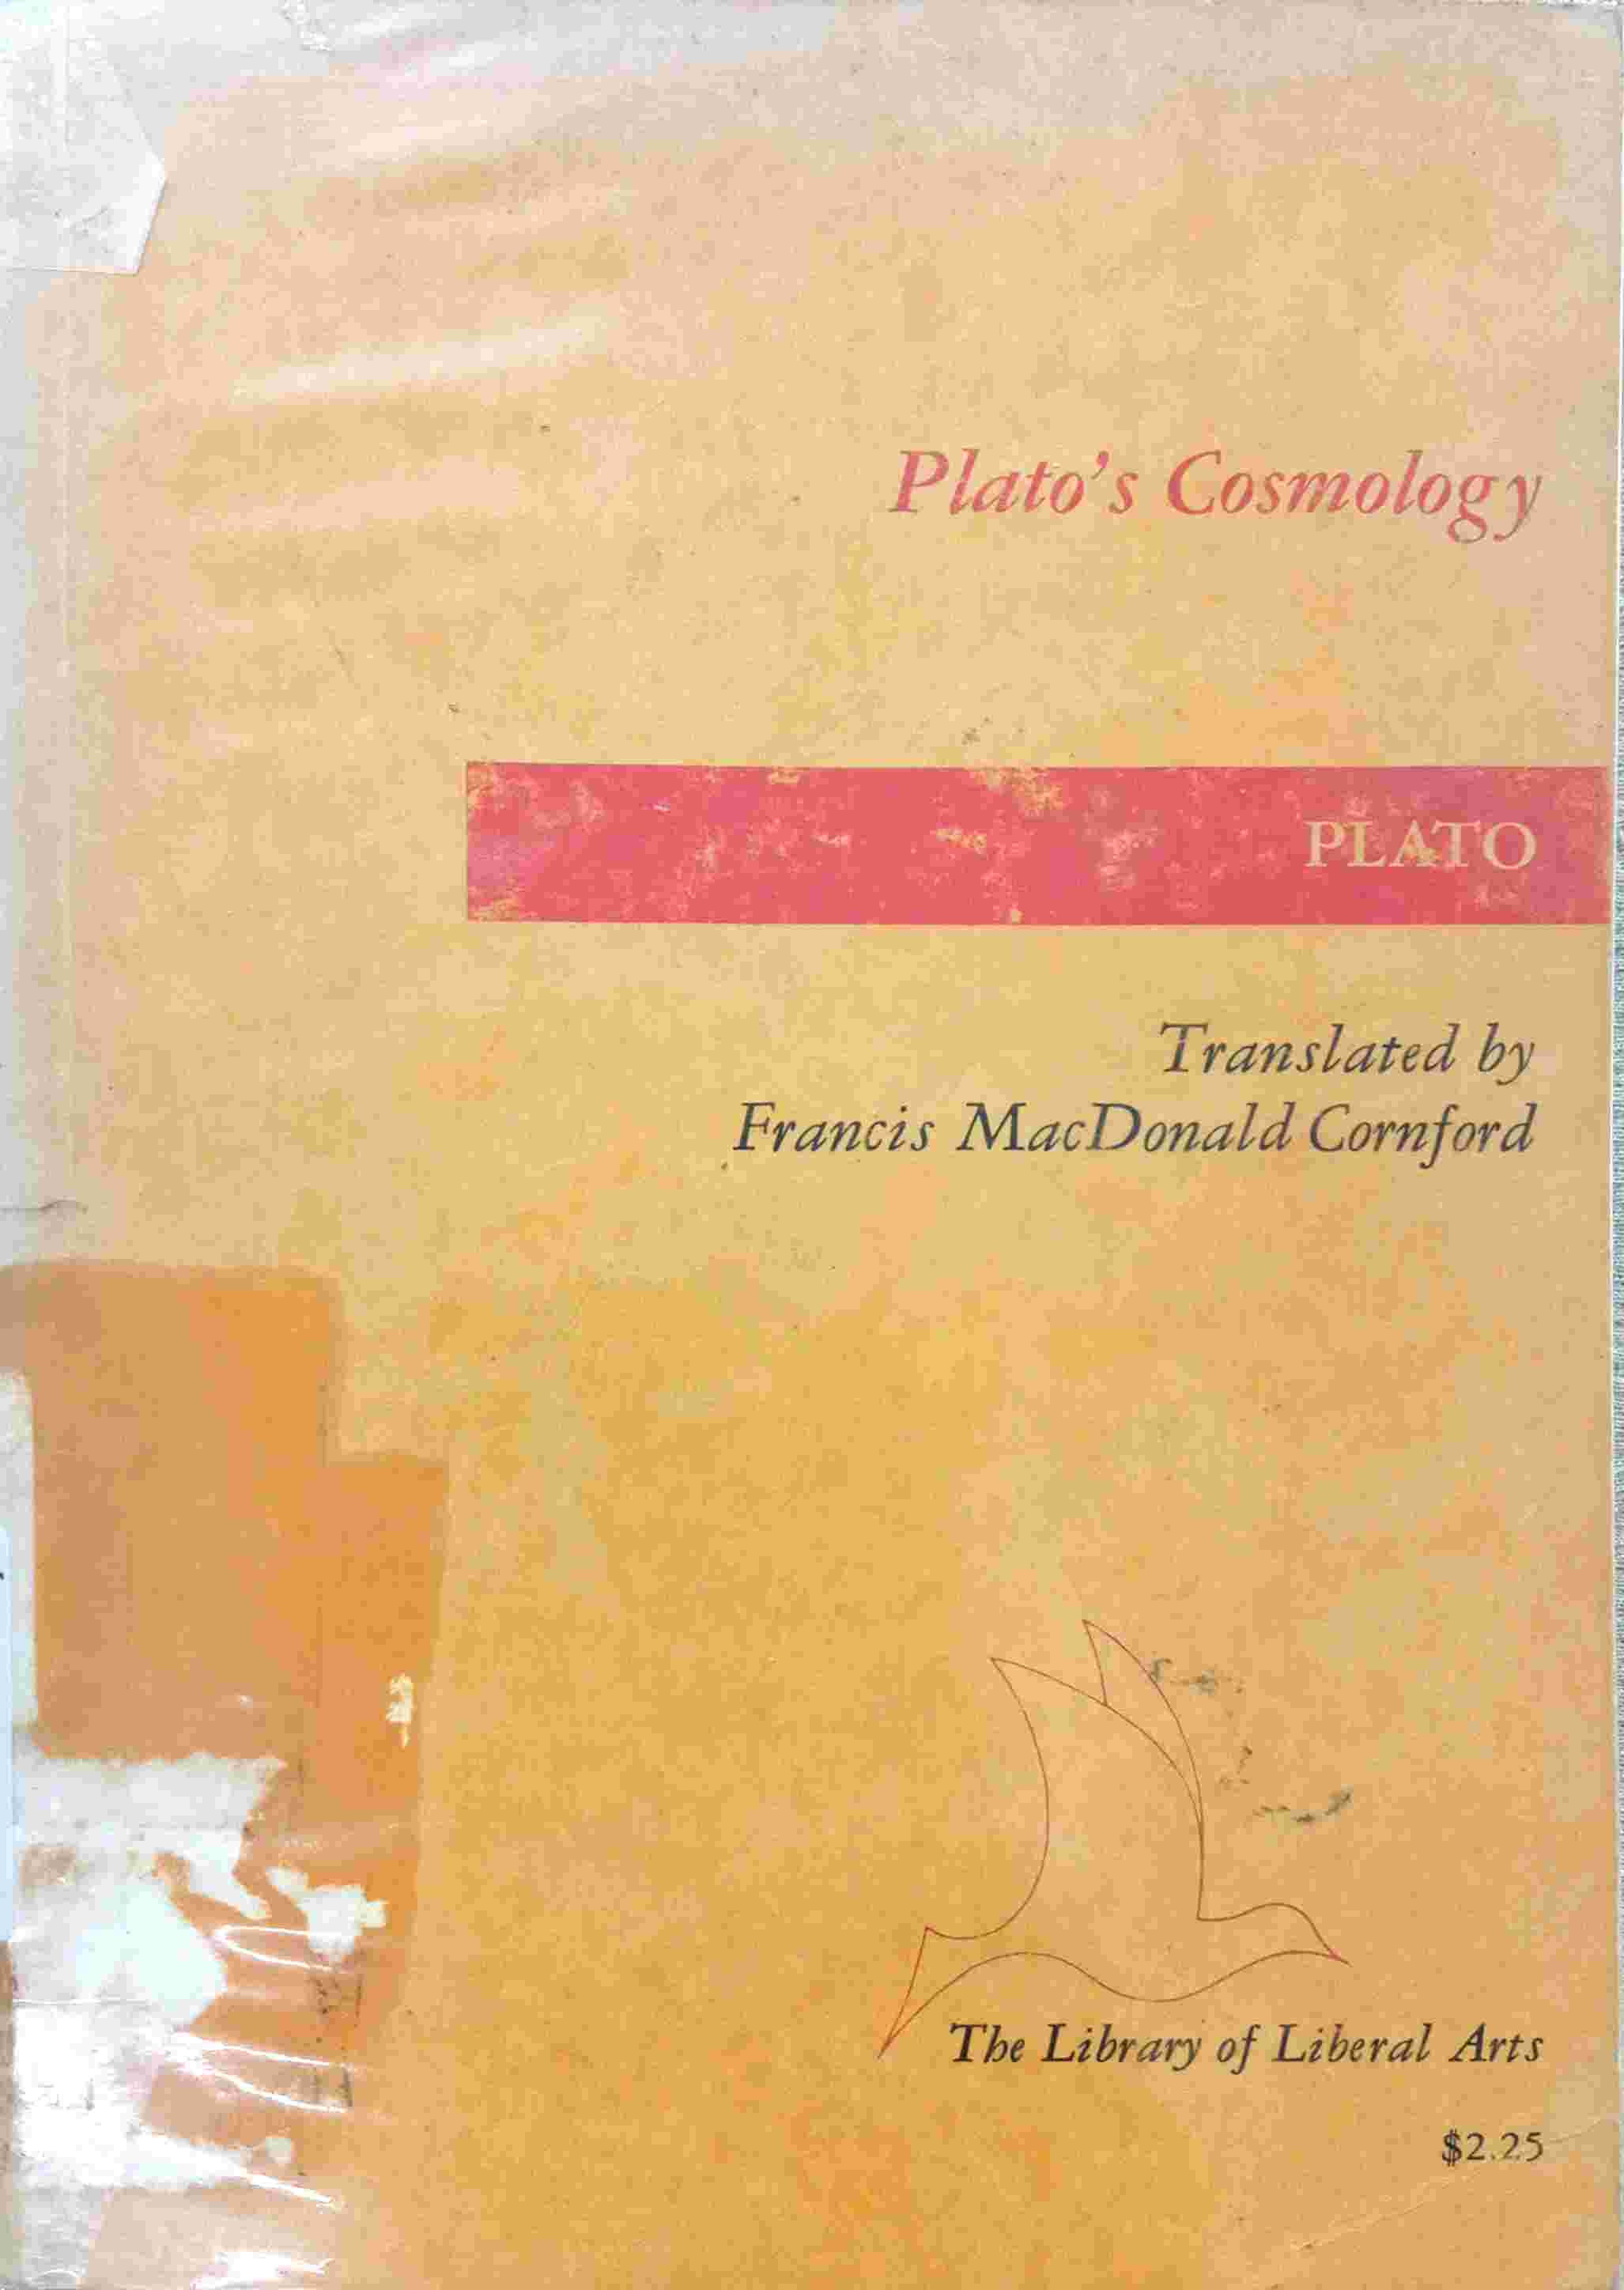 PLATO's COSMOLOGY